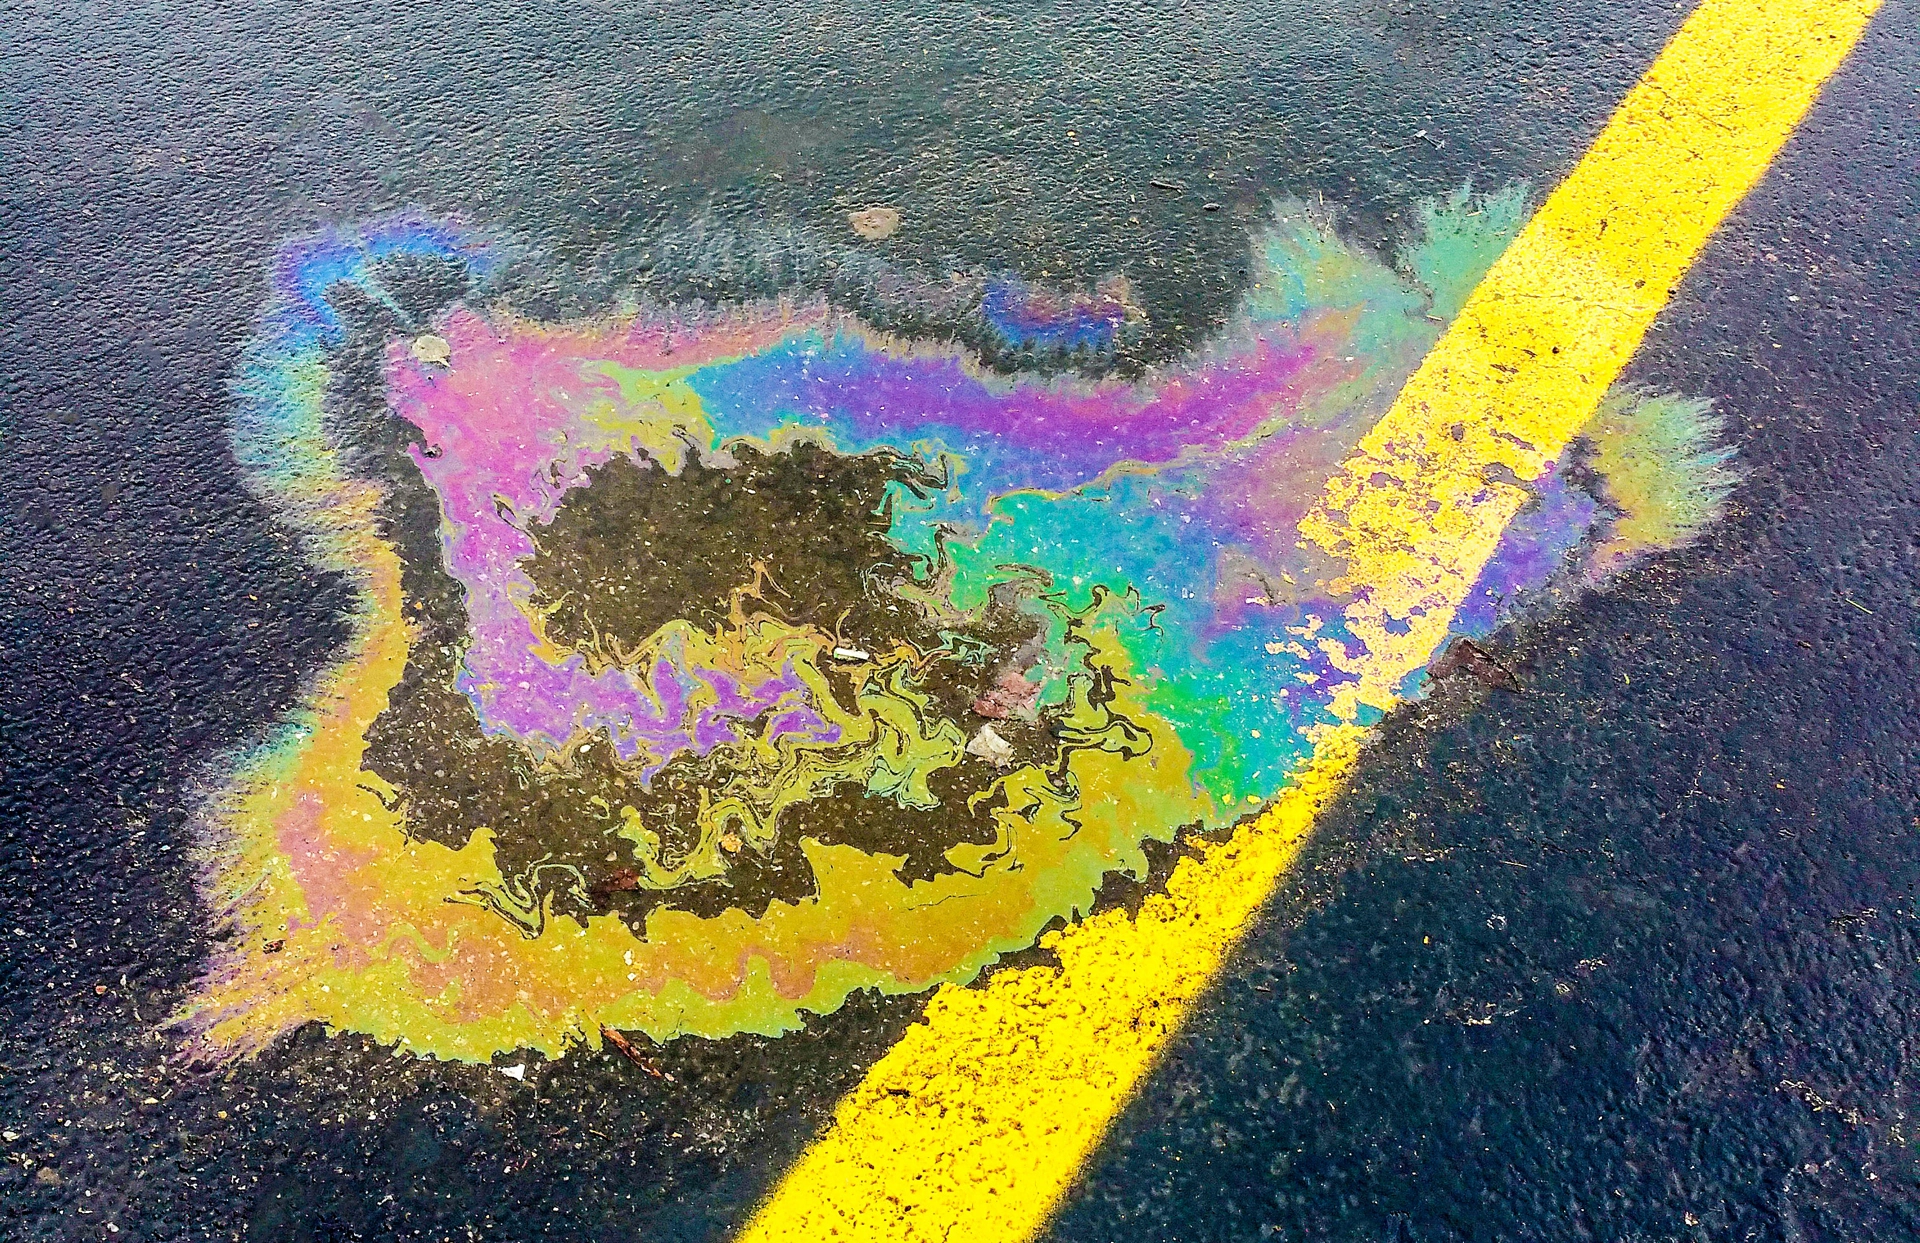 SPCC Plan Prevents Oil Spill